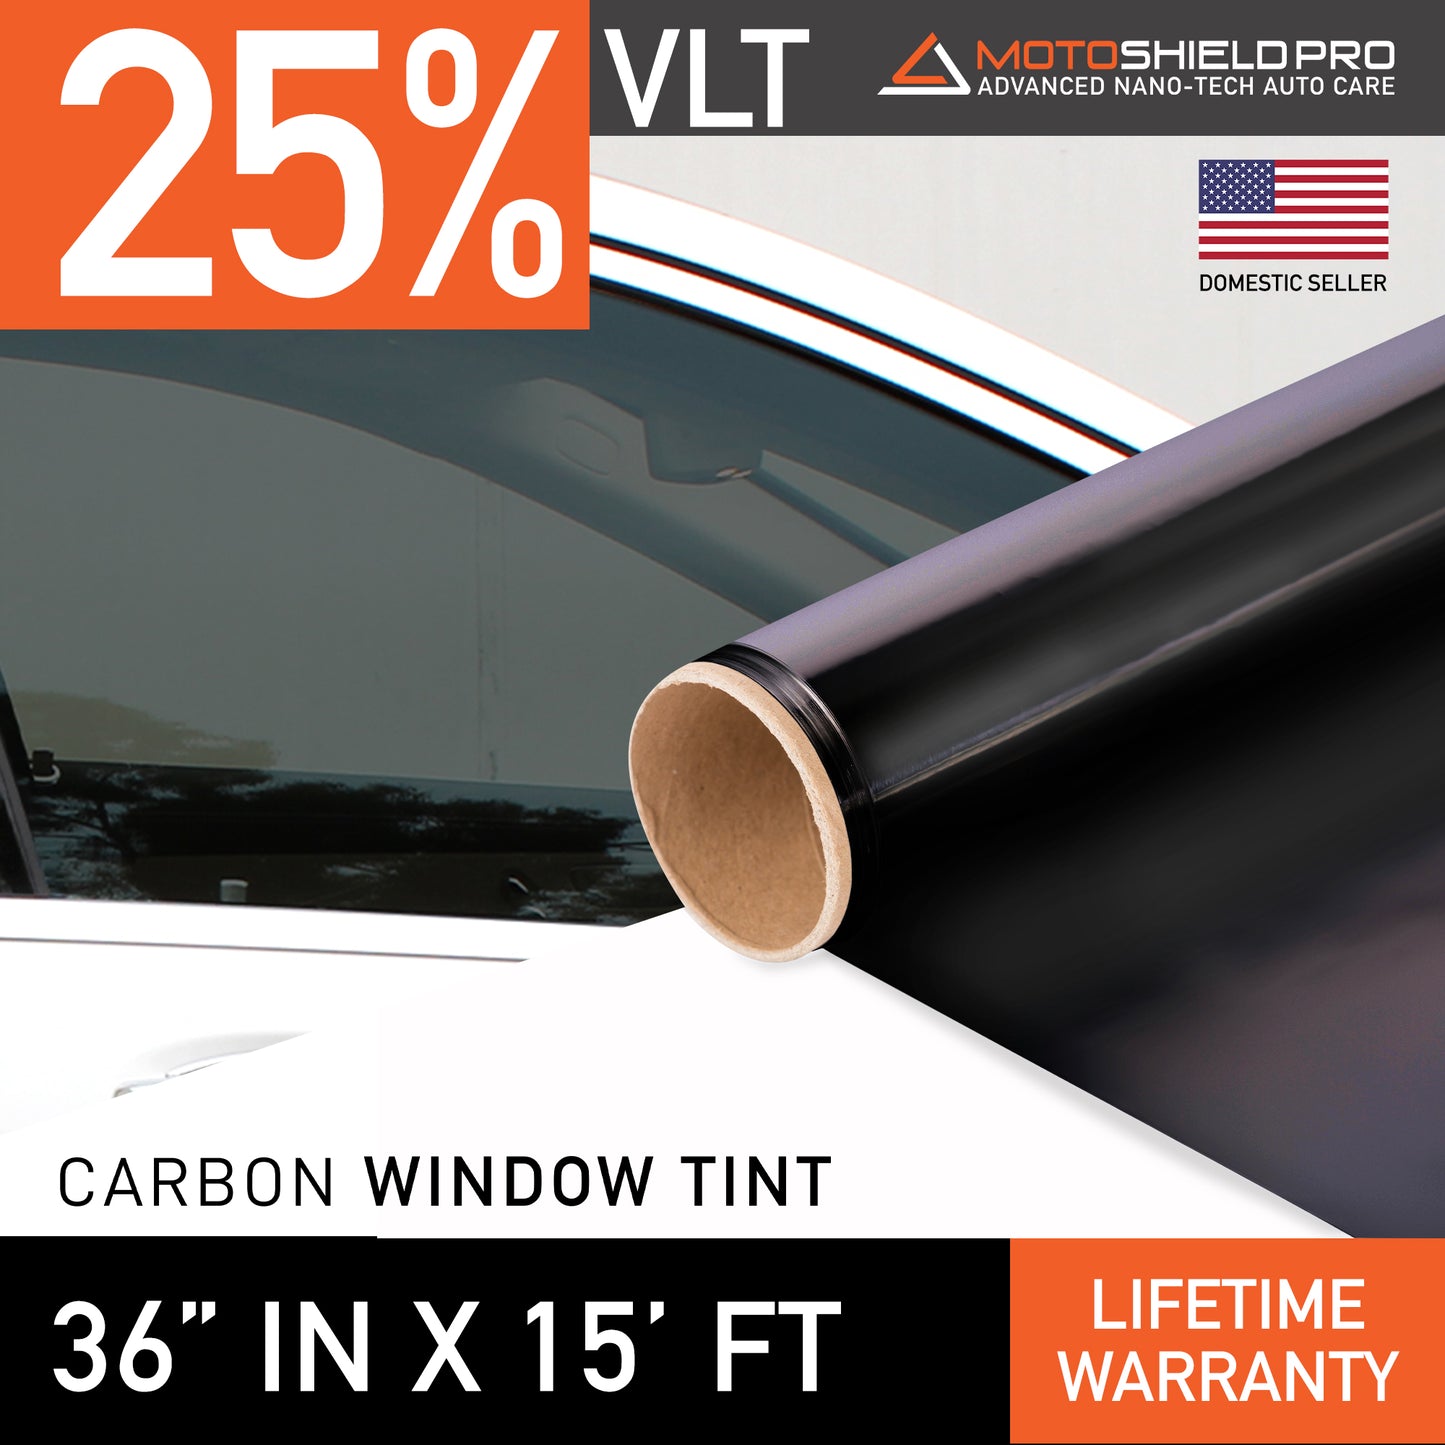 MotoShield Pro Carbon Window Tint - 36" in x 15' ft Roll + Lifetime Warranty